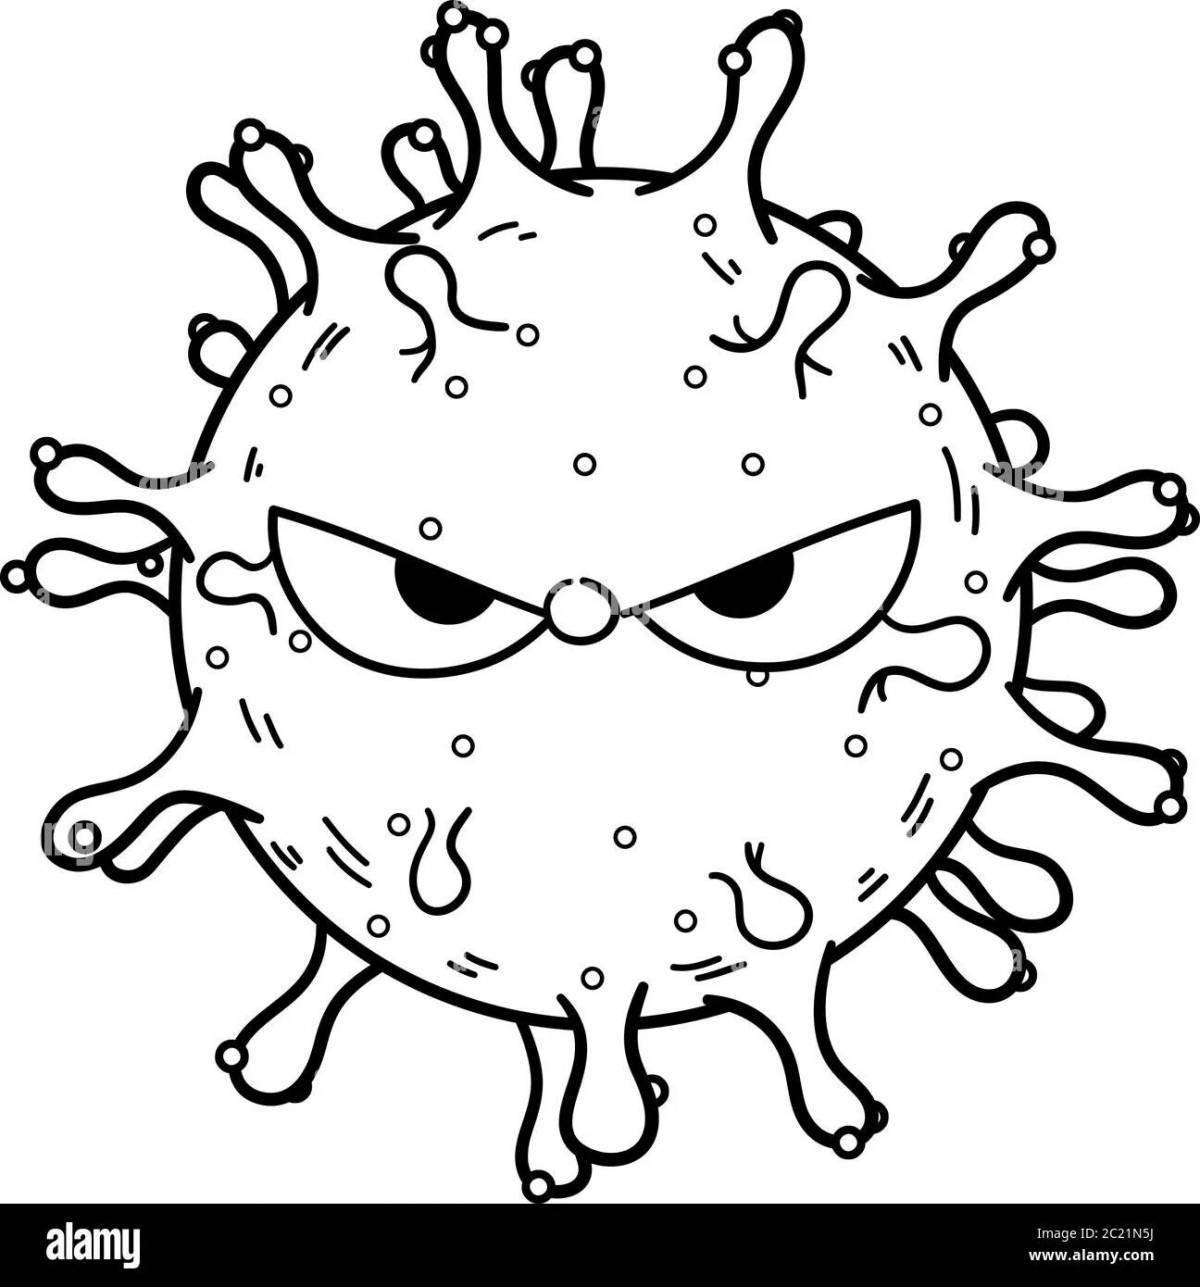 Вирус рисунок для детей раскраска